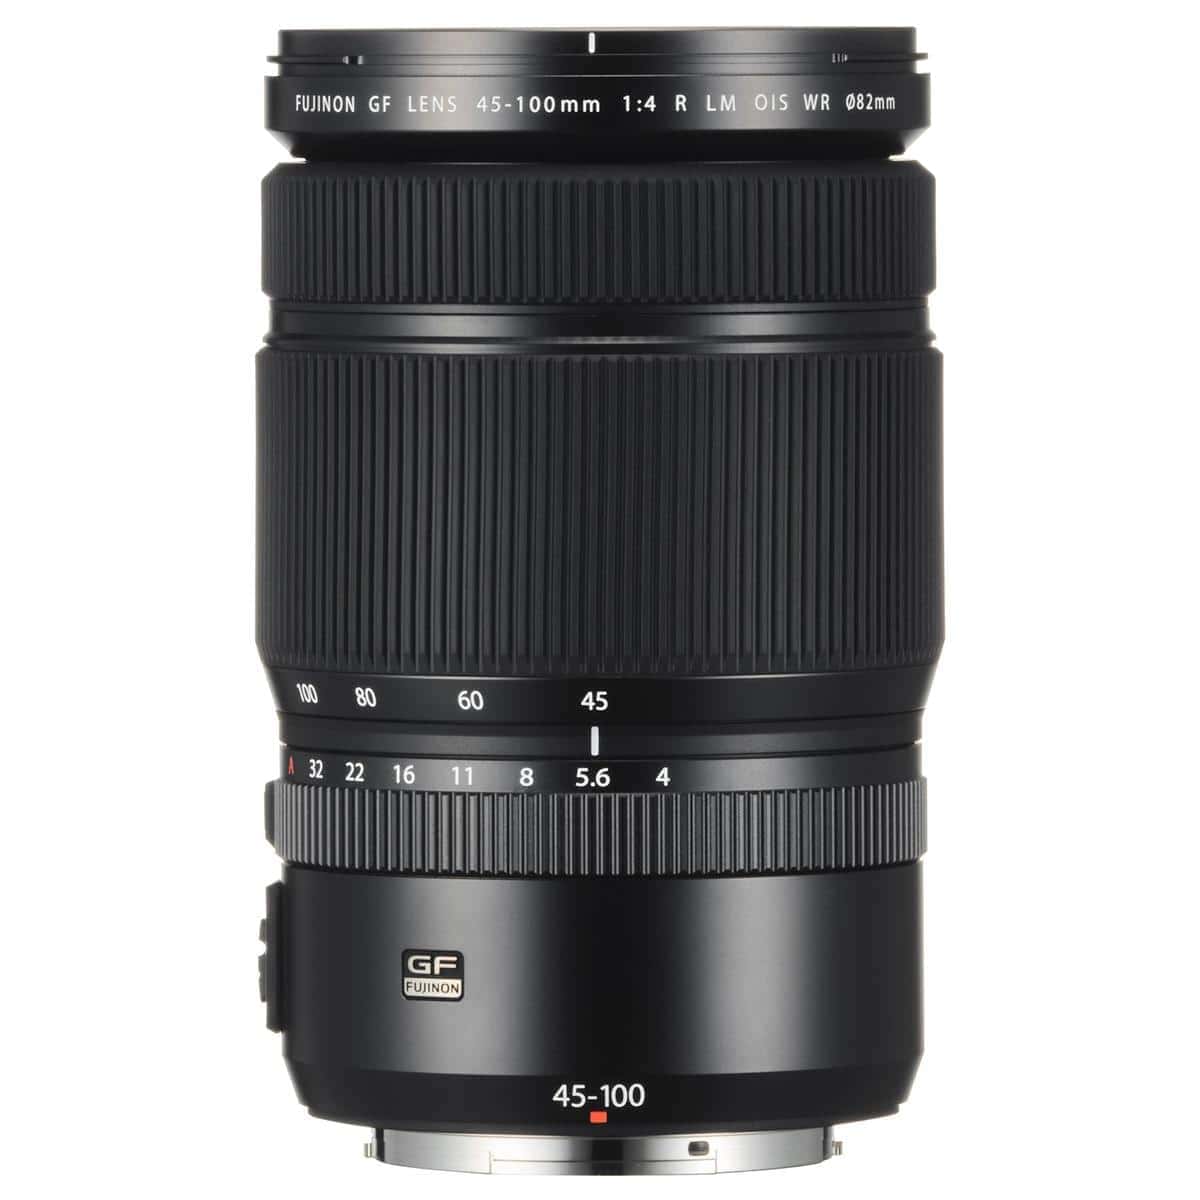 Fujifilm GF 45-100mm F4 R LM WR Zoom Lens